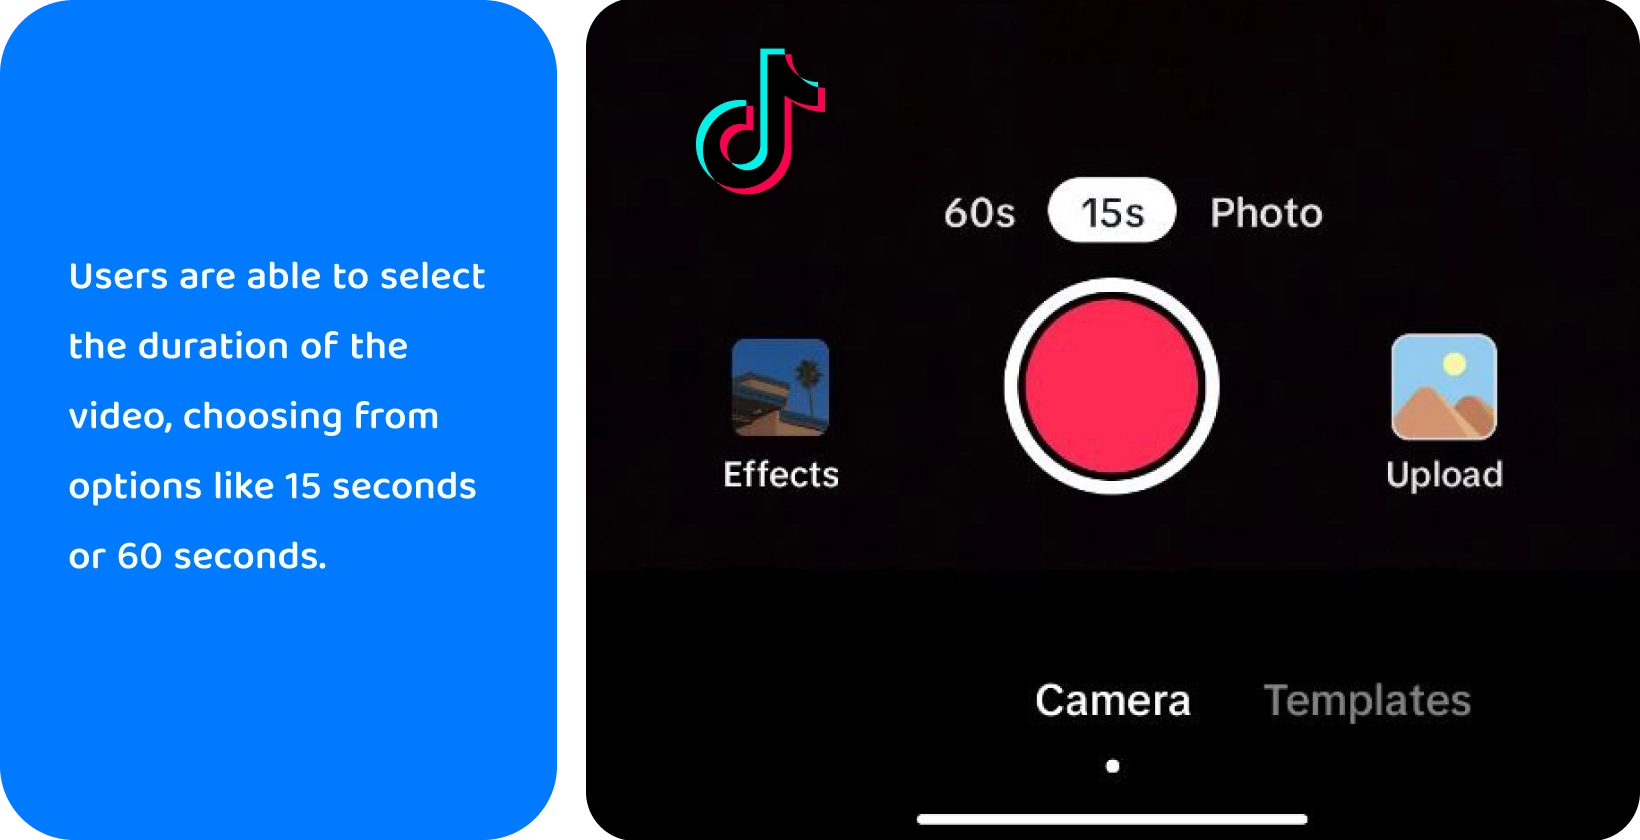 TikTok salvestusliides võimalustega lisada heli, klappkaamerat, rakendada filtreid, kasutada taimerit ja palju muud loomingulise video tegemiseks.
